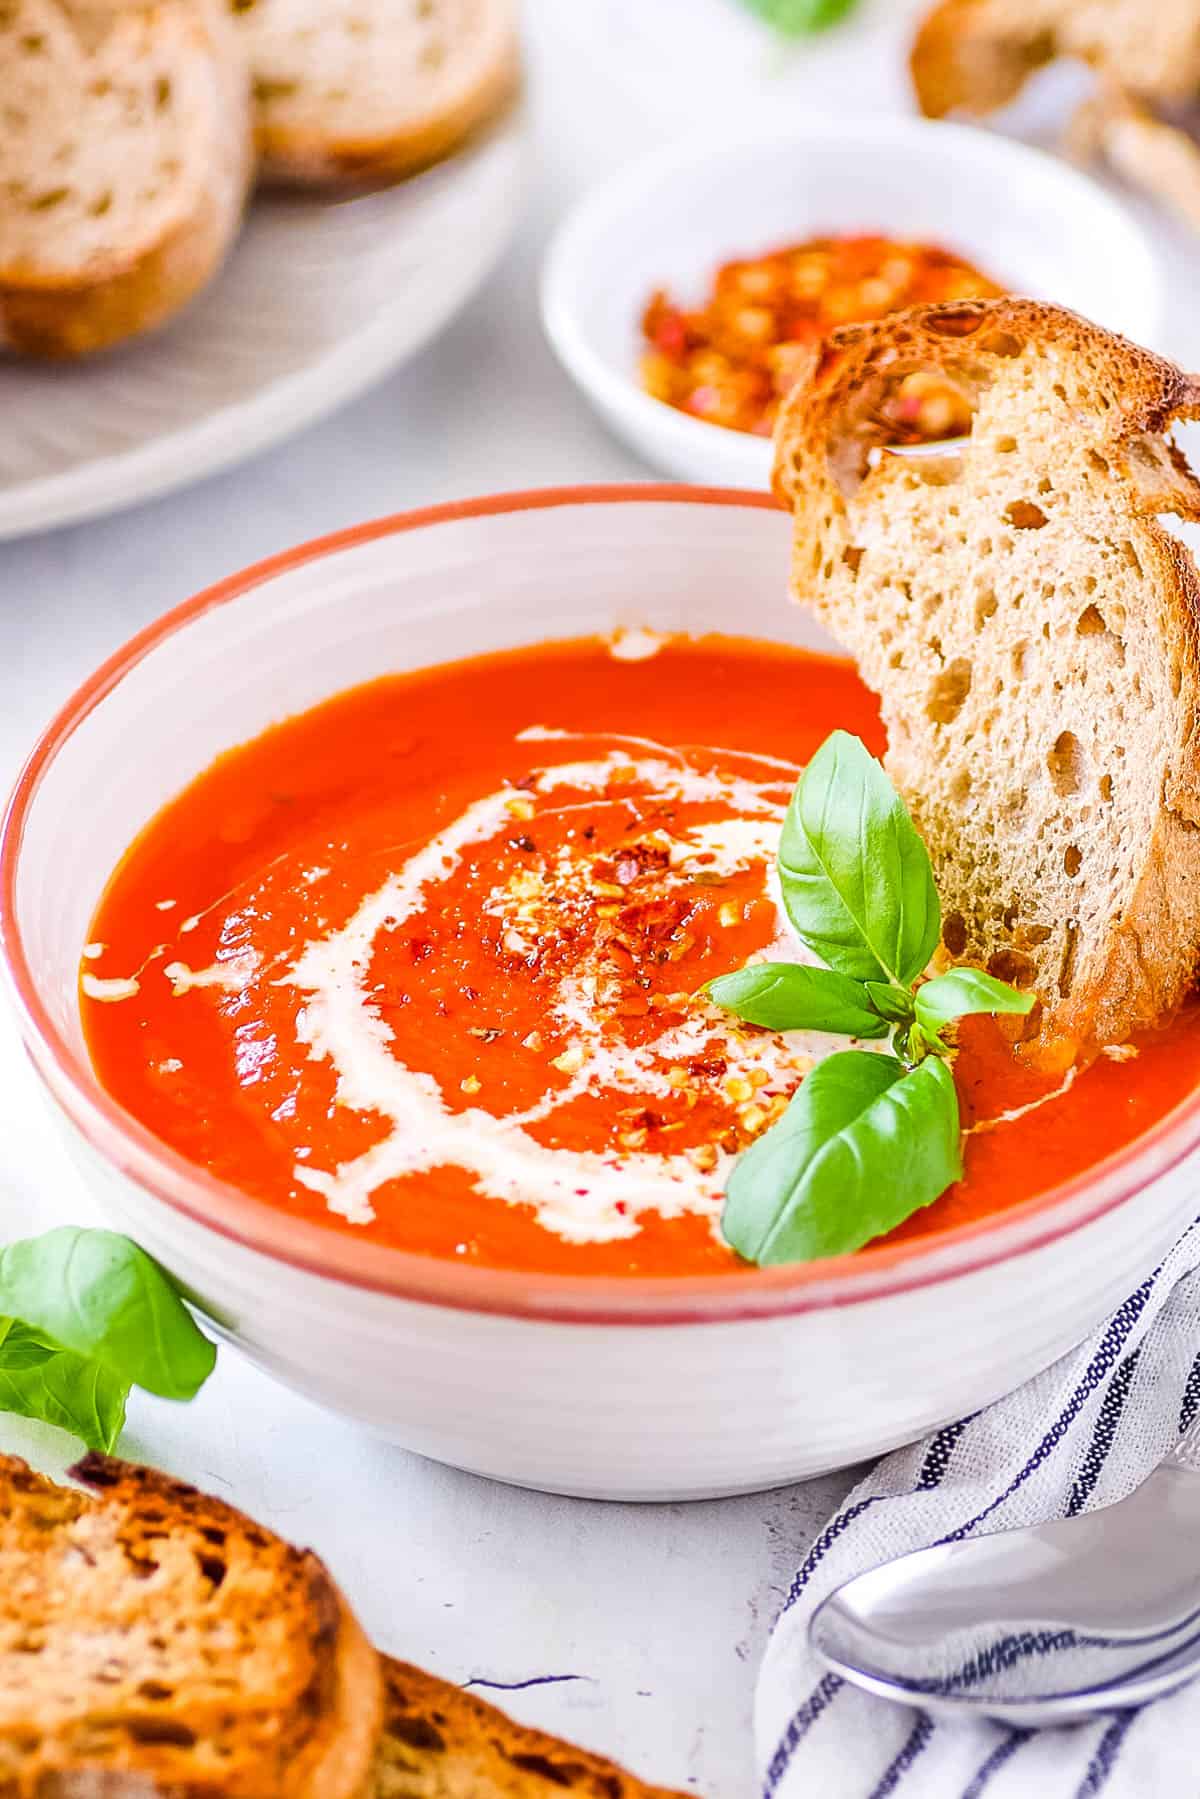 Soupe à la tomate à trois ingrédients avec des tomates en conserve servie dans un bol blanc avec du basilic frais et du pain croûté comme garniture.